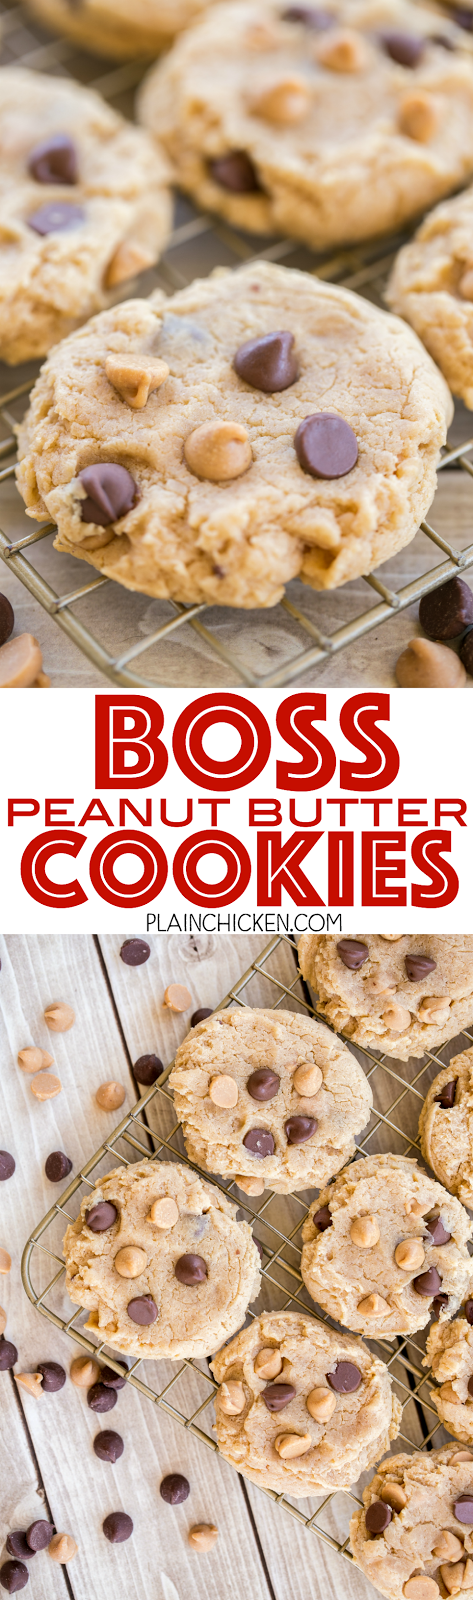 Boss Peanut Butter Cookies | Plain Chicken®